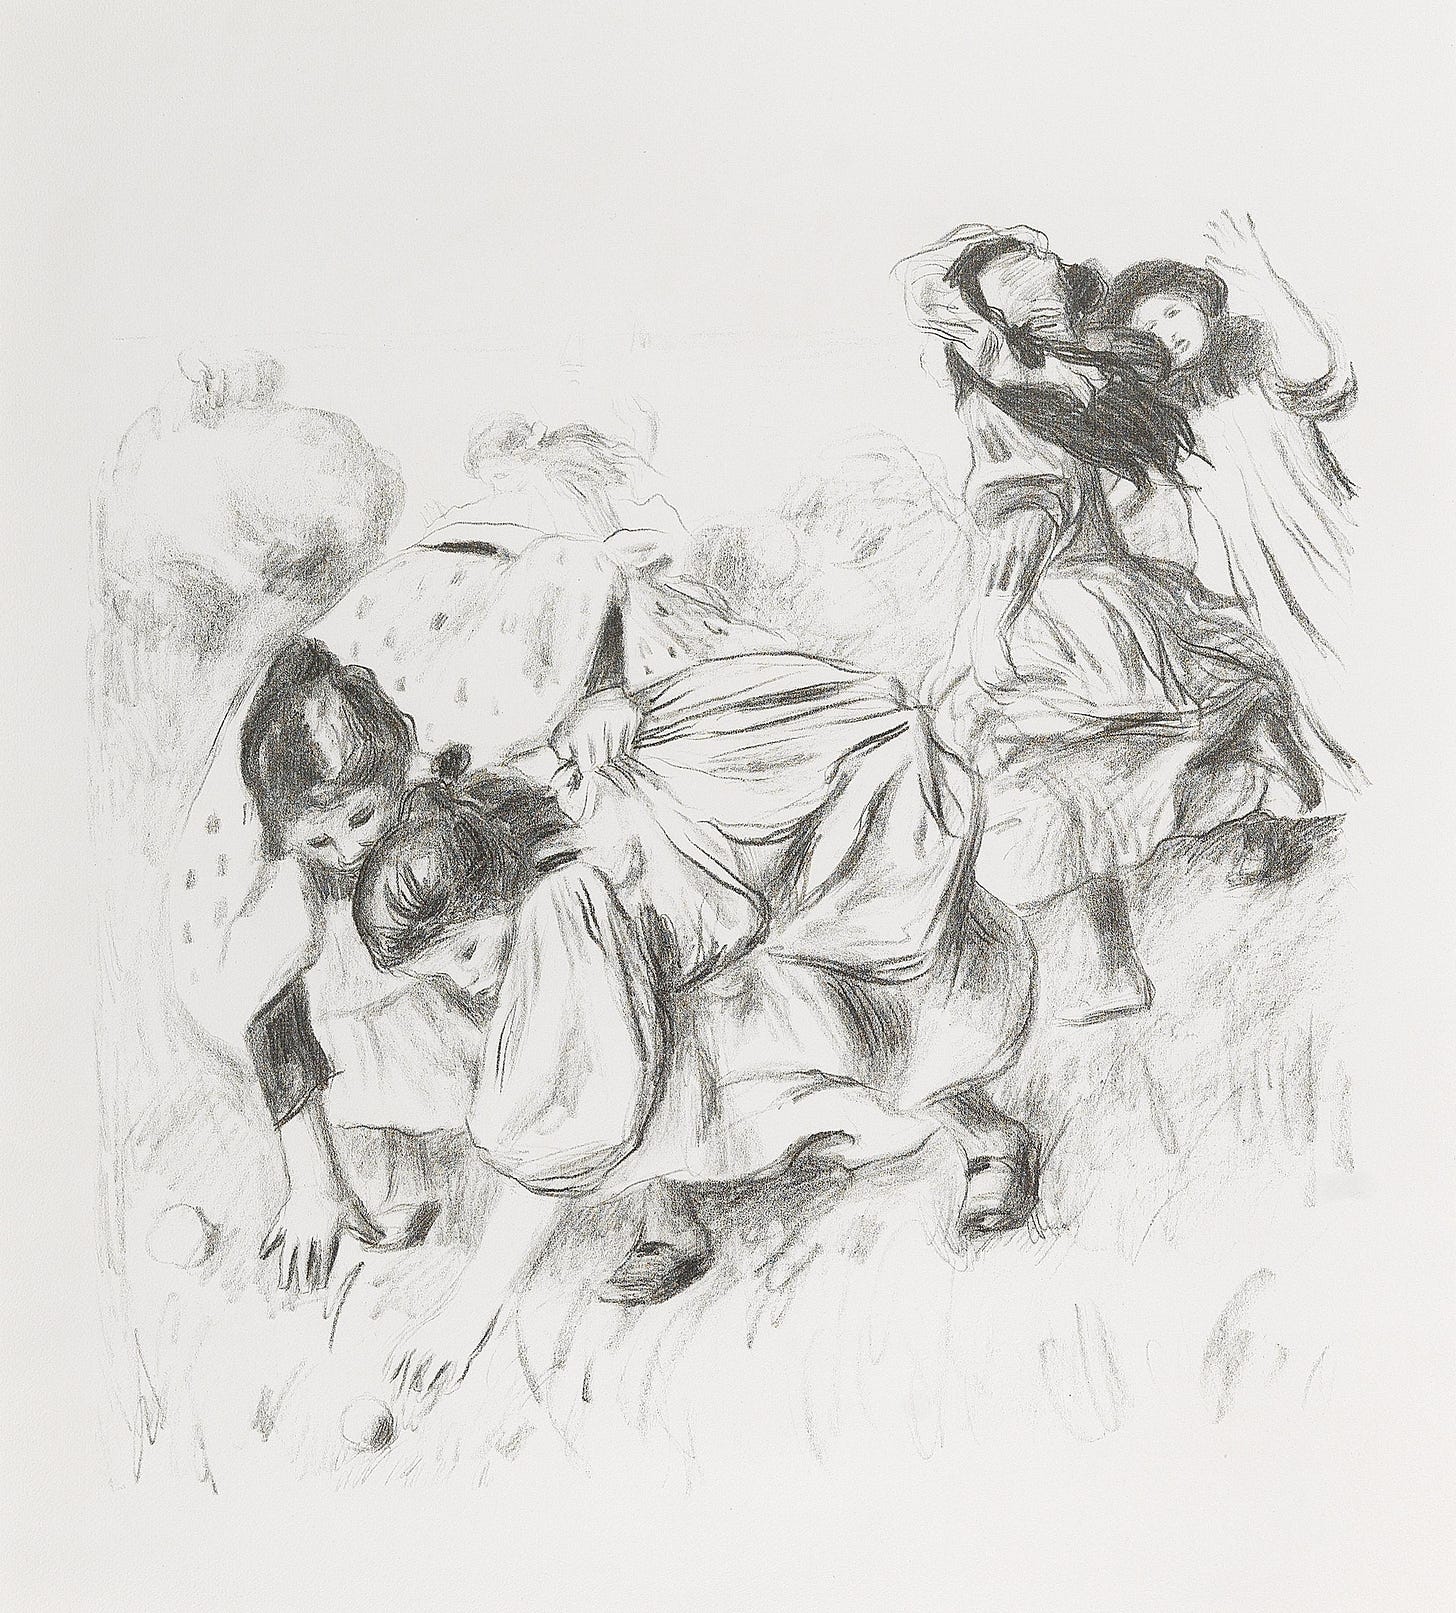 Enfants jouant à la balle by Pierre-Auguste Renoir